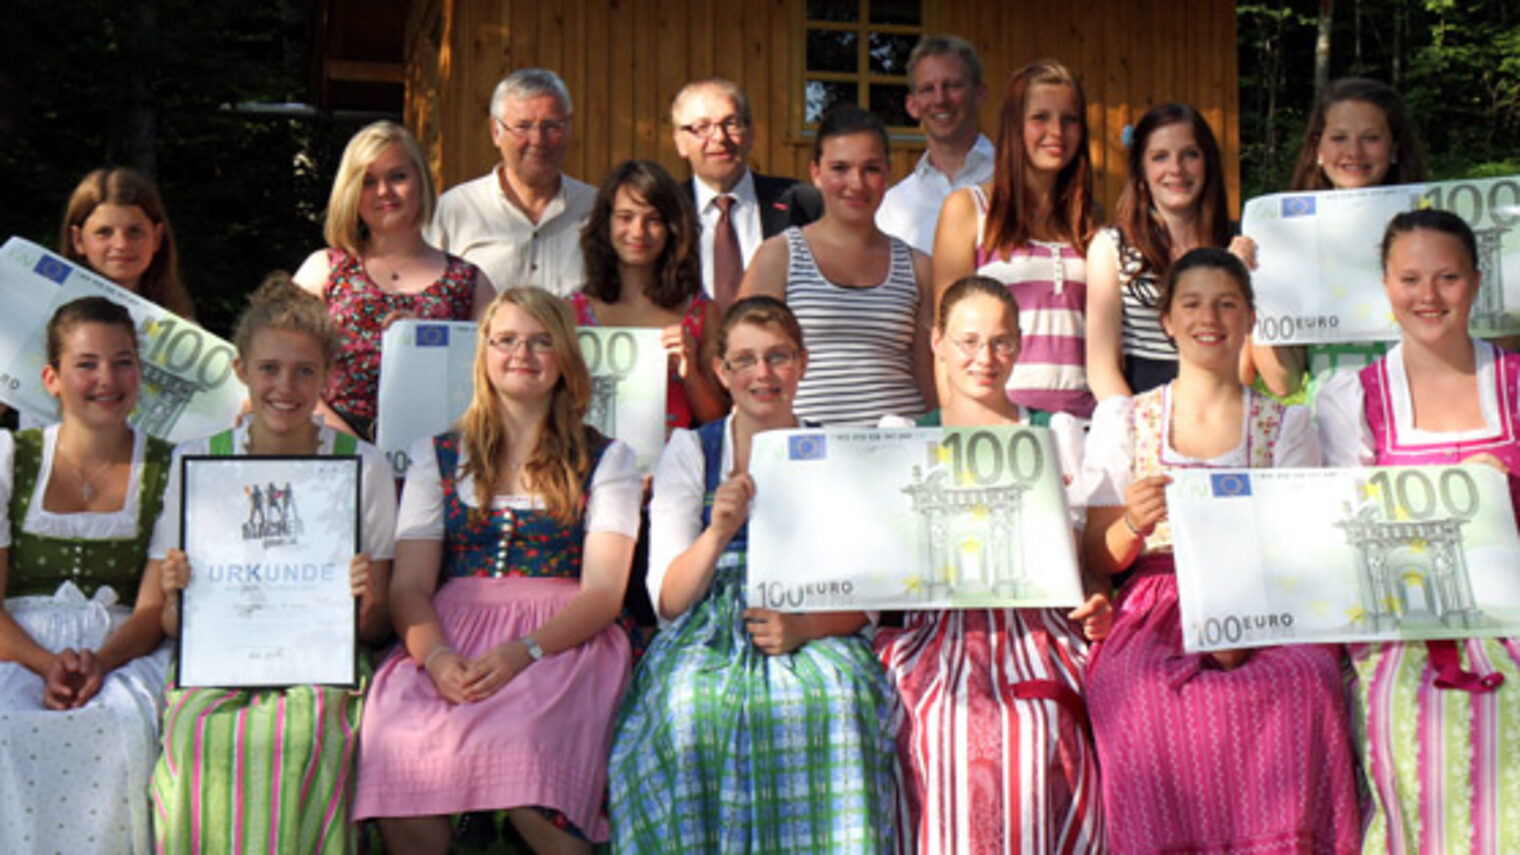 Mädchenrealschule St. Ursula in Lenggries bekommt 500 Euro für Schulprojekt.